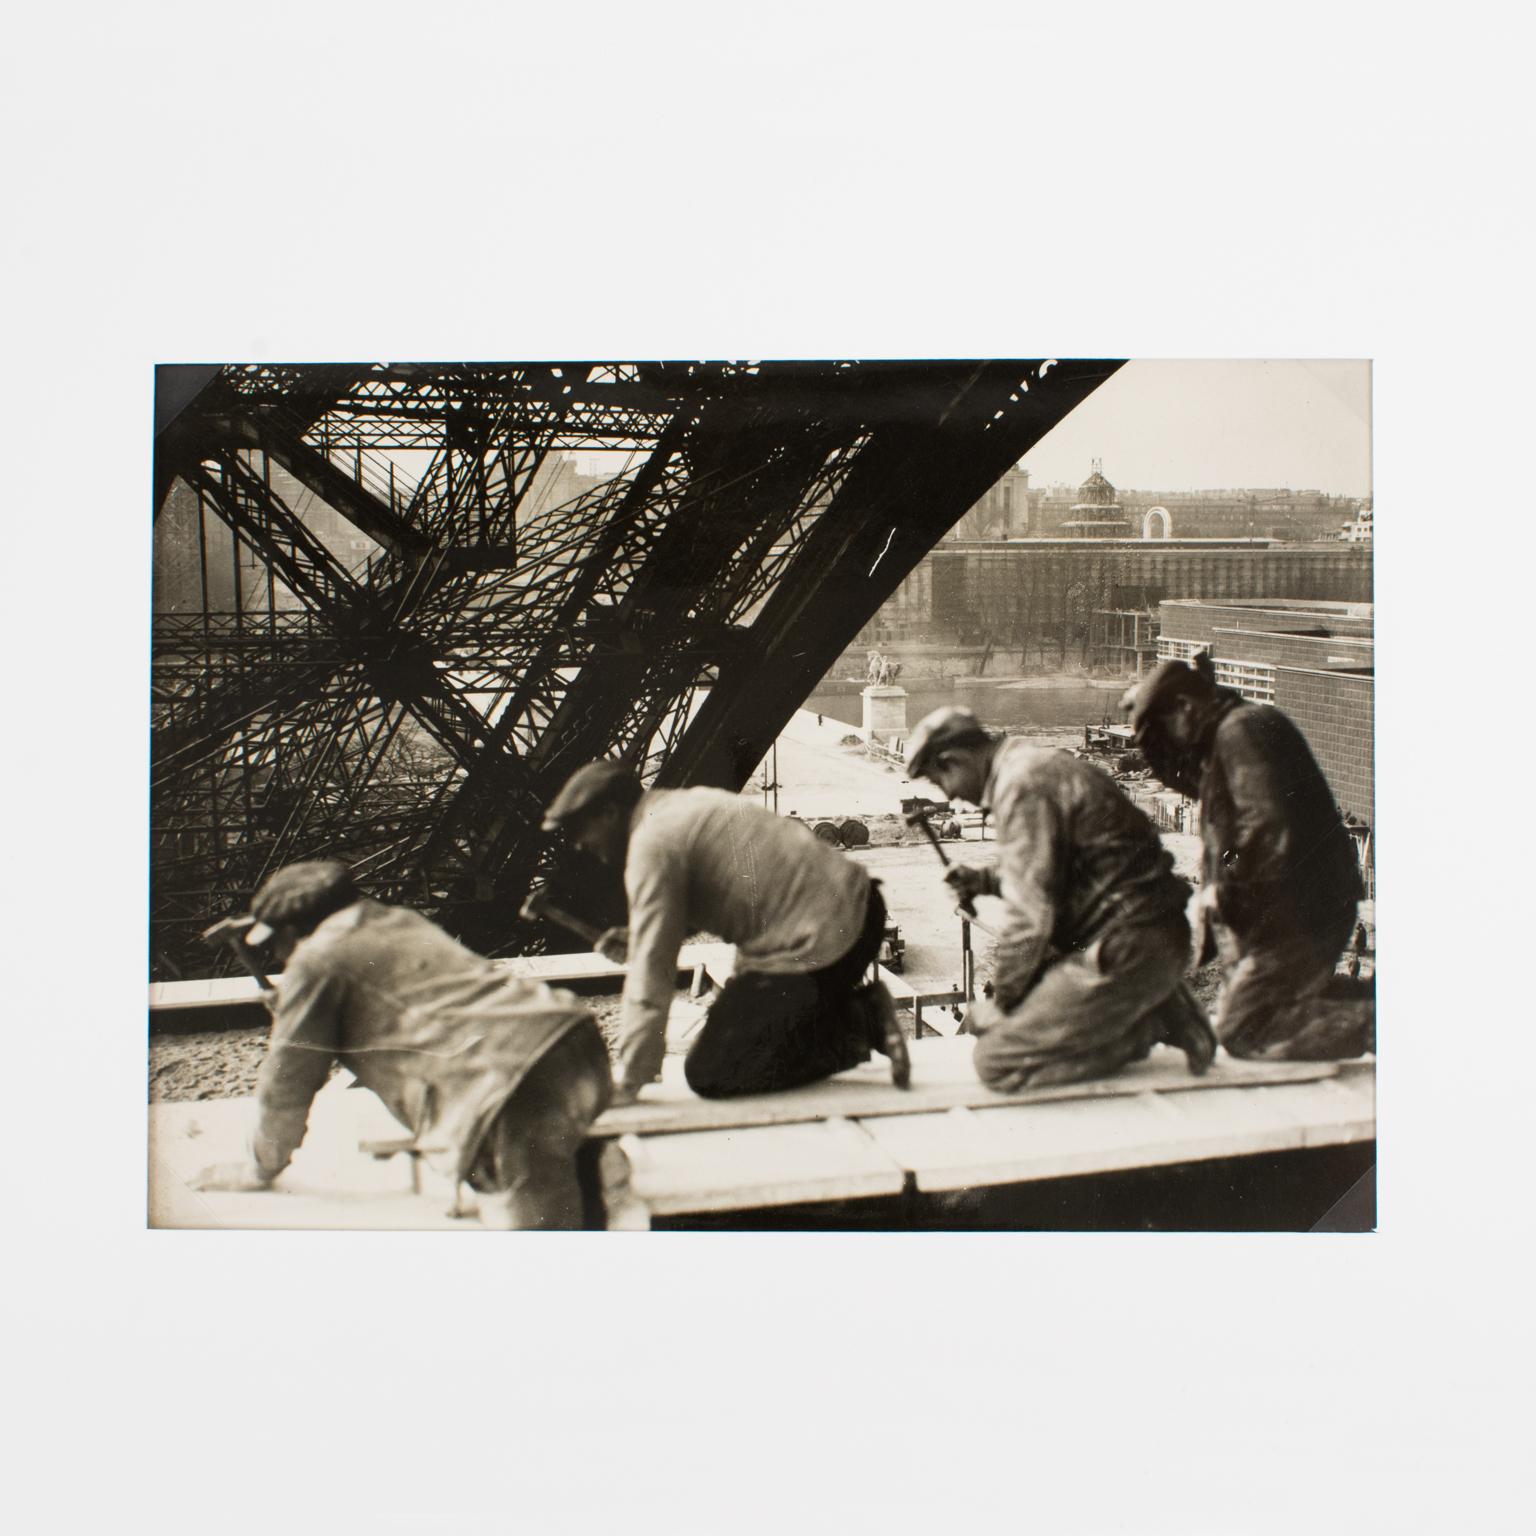 Internationale Pariser Ausstellung mit Eiffelturm, Silber-Gelatine-B und W-Fotografie – Photograph von Press Agency MONDIAL